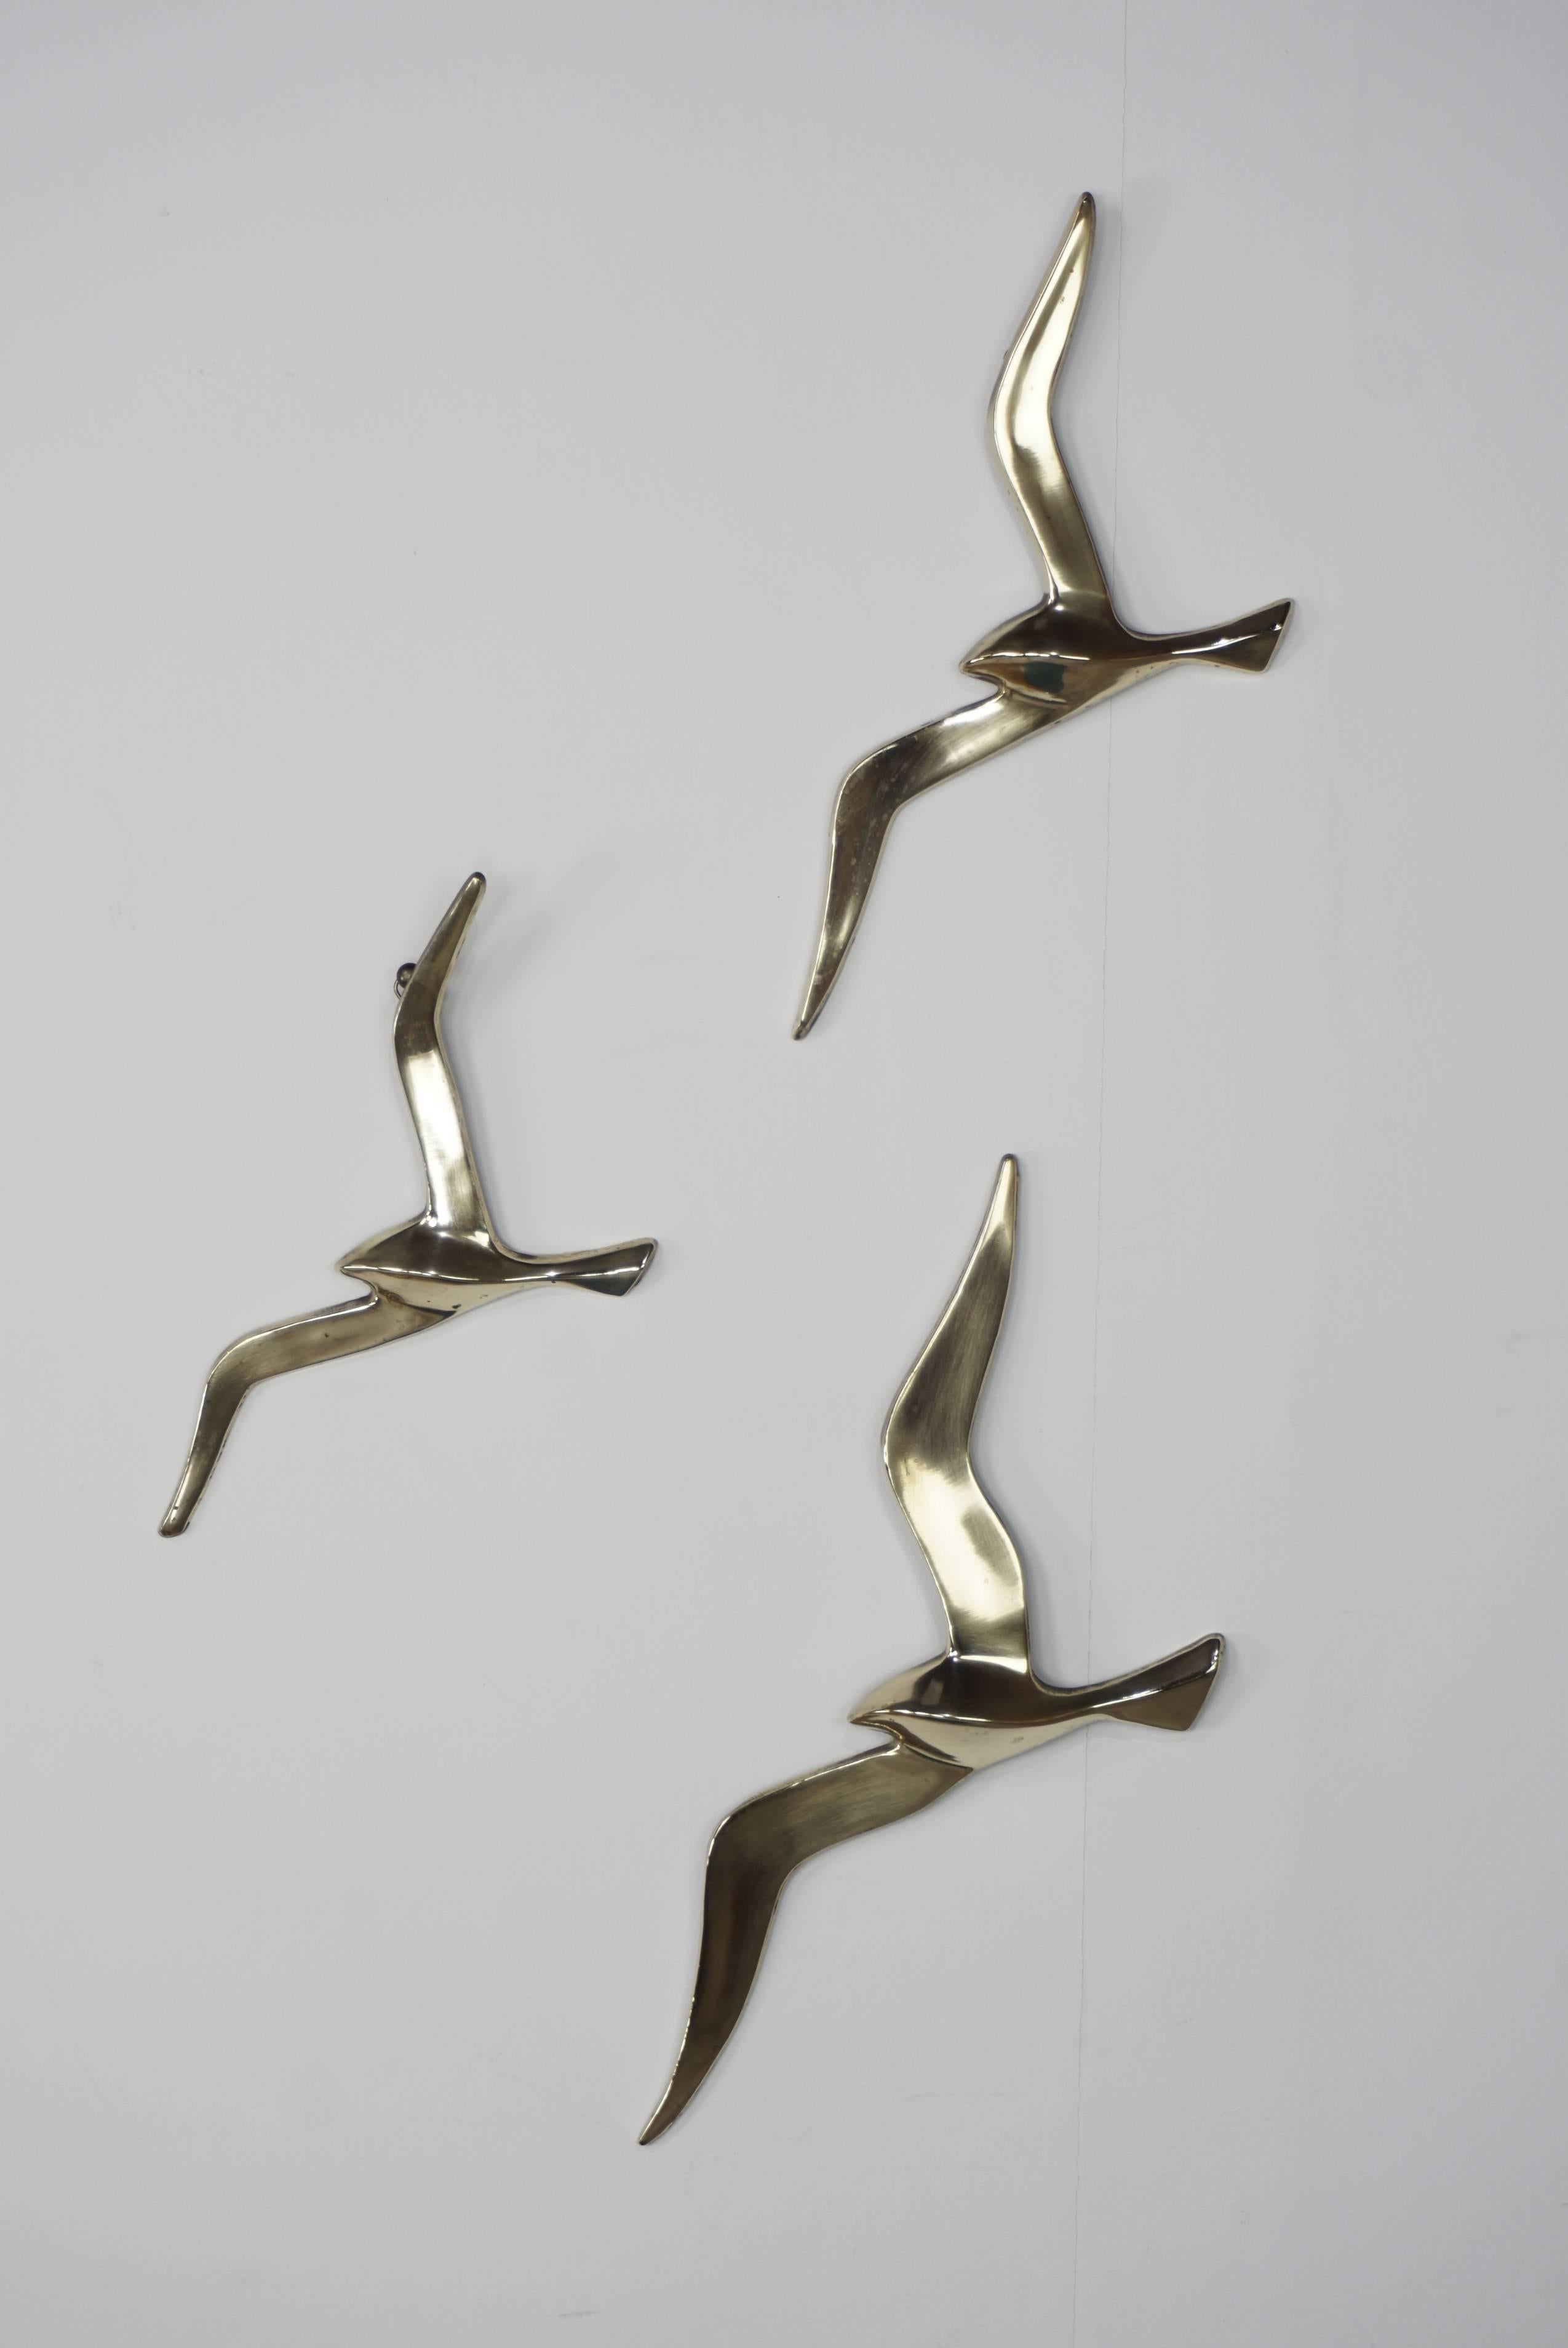 Satz Vögel im Flug, 1960er Jahre Design, Messing, zusammen oder einzeln, Sie können sie mit den Ringen auf der Rückseite hängen.

Maße: H. 36cm x L. 15cm x I. 2cm / H. 28cm x L. 13cm x I. 2cm / H. 25cm x L. 12cm x I. 2cm.
  